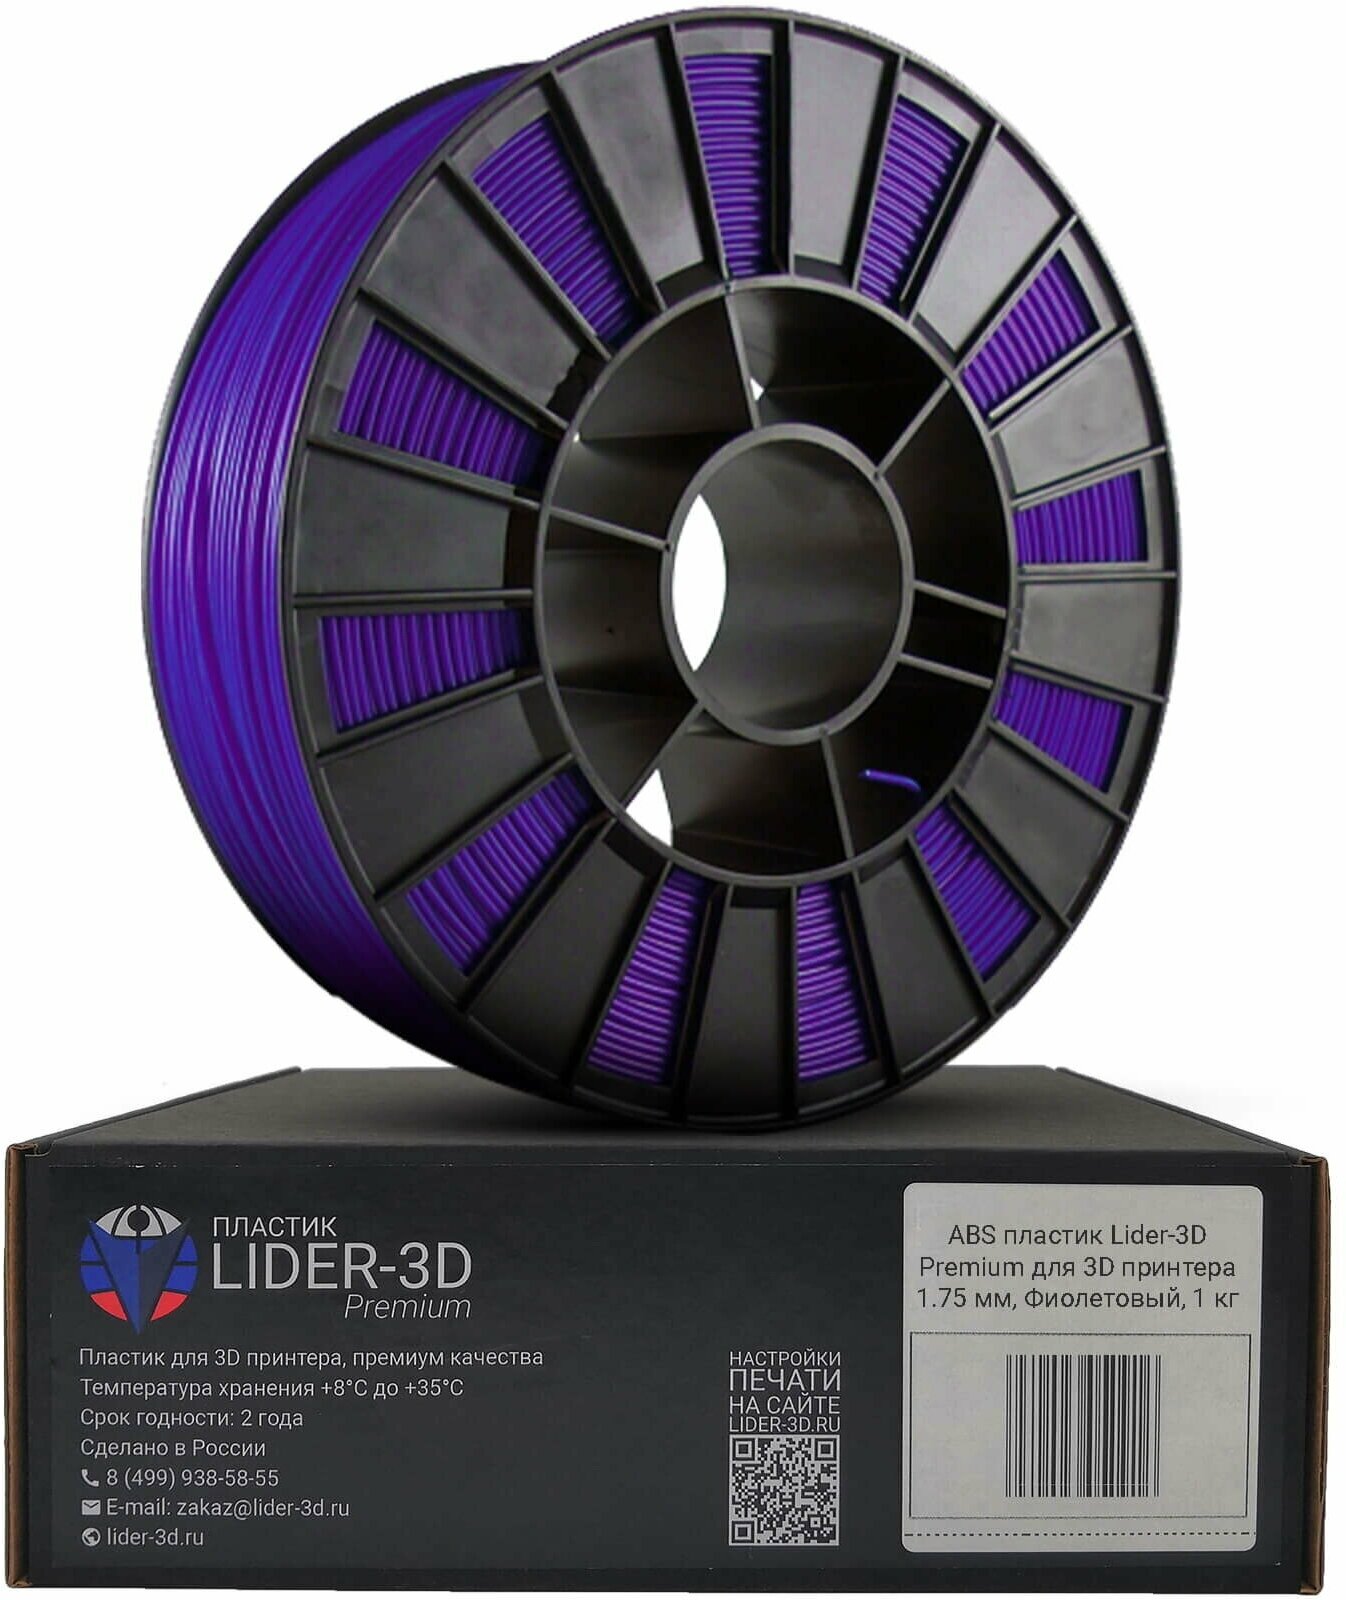 ABS пластик LIDER-3D Premium для 3D принтера 1.75 мм, Фиолетовый, 1 кг